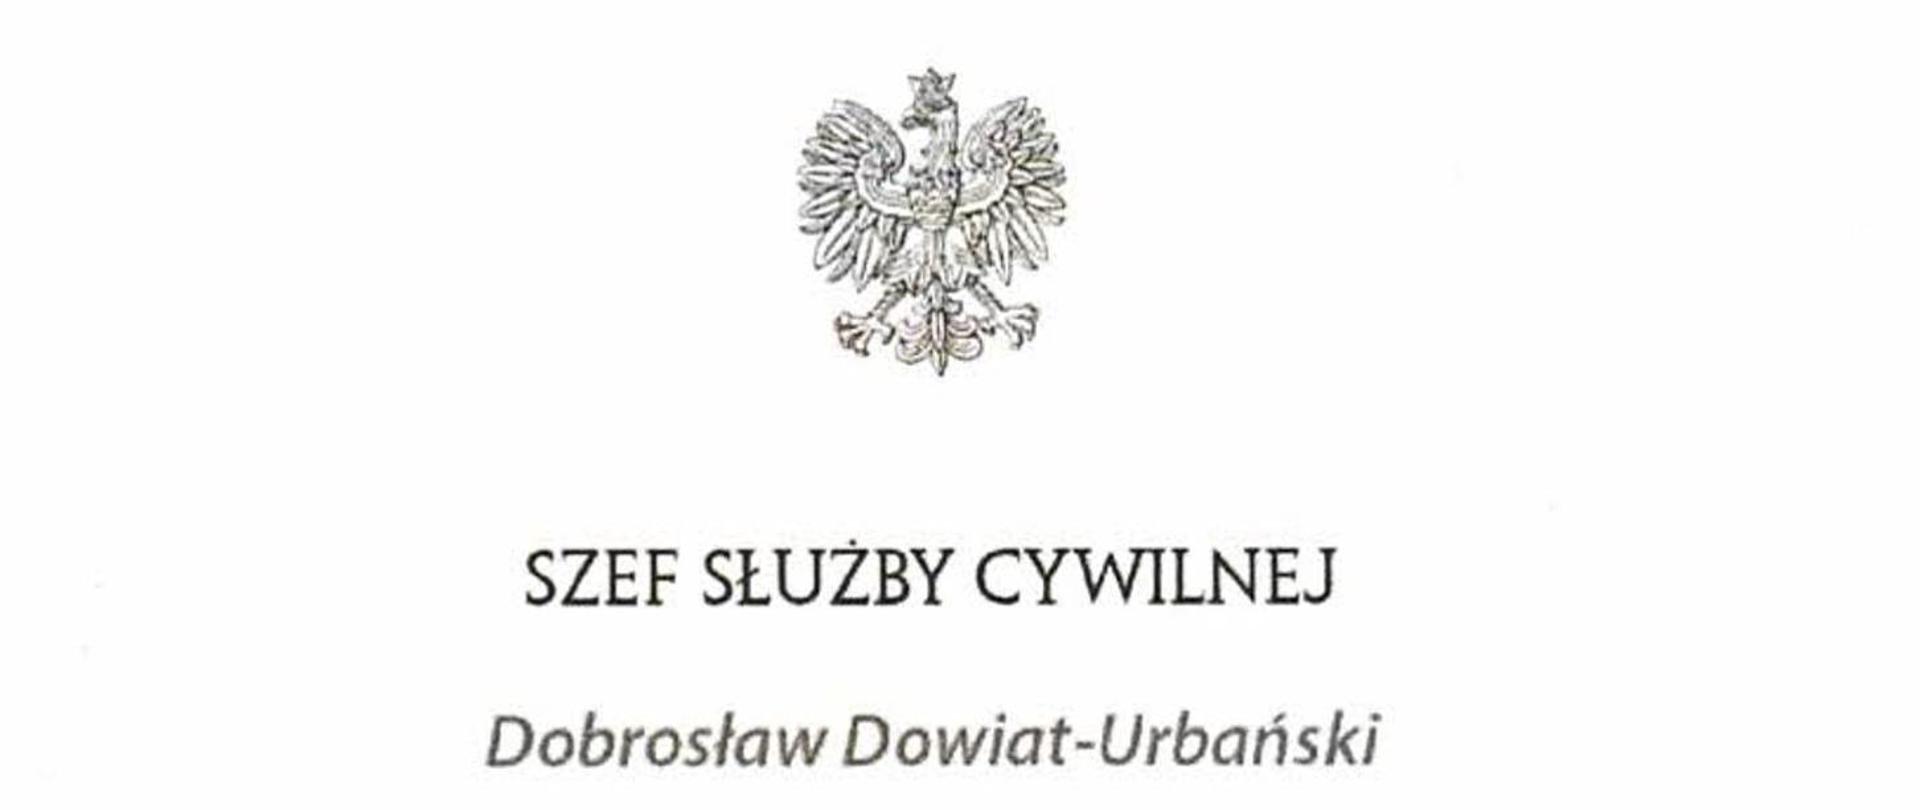 Logo Szefa Służby Cywilnej. U góry widoczny orzeł, poniżej napis Szef Służby Cywilnej oraz imię i nazwisko Dobrosław Dowiat - Urbański